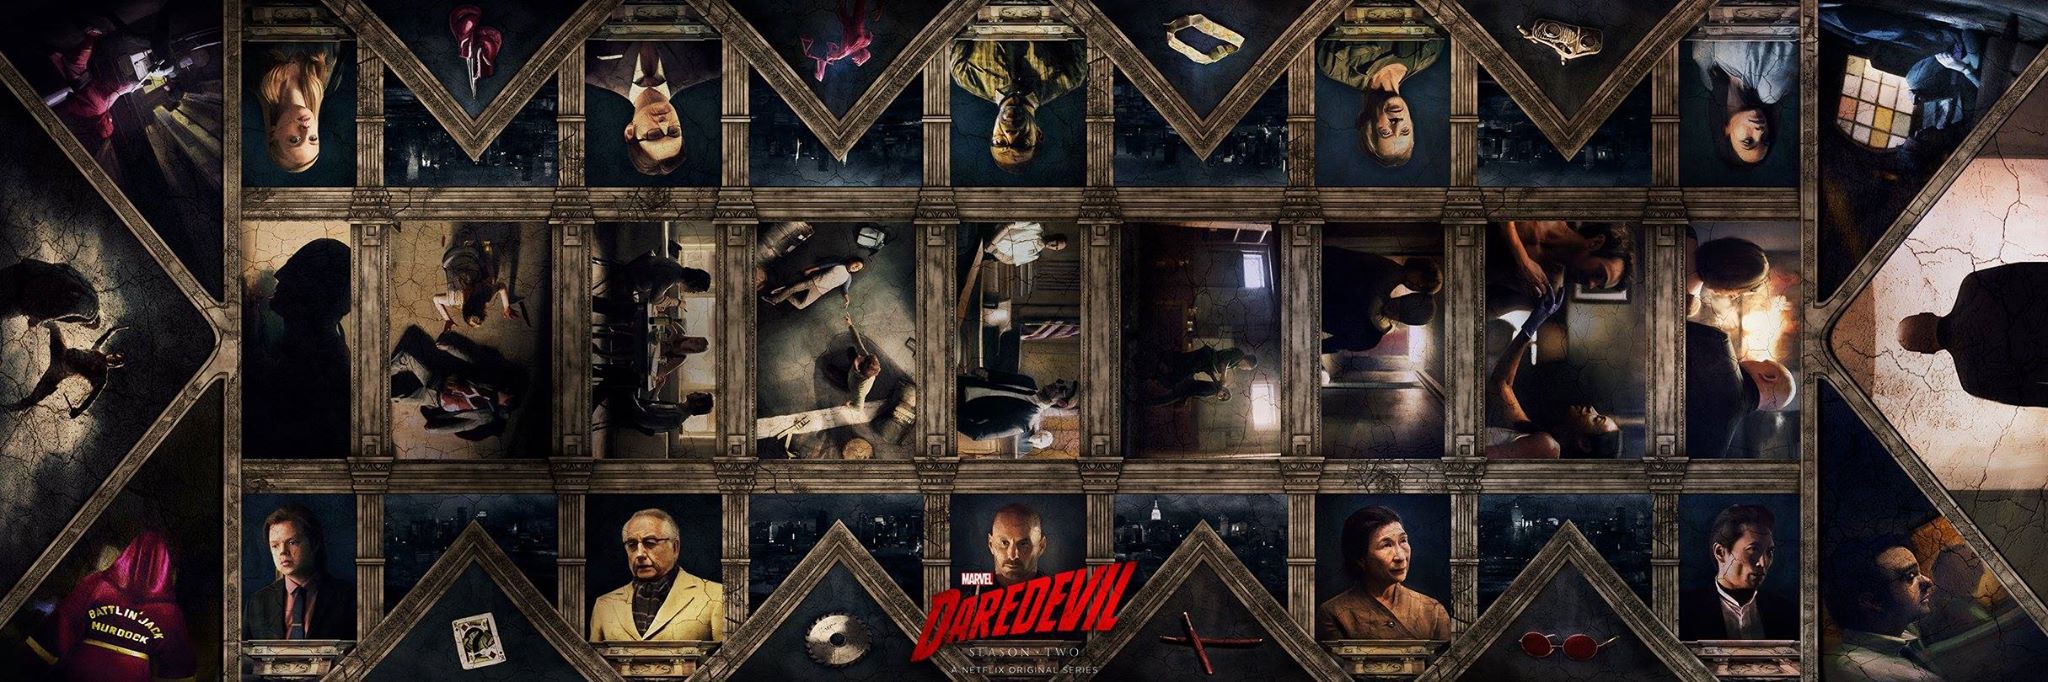 Mega Sized TV Poster Image for Daredevil (#12 of 24)